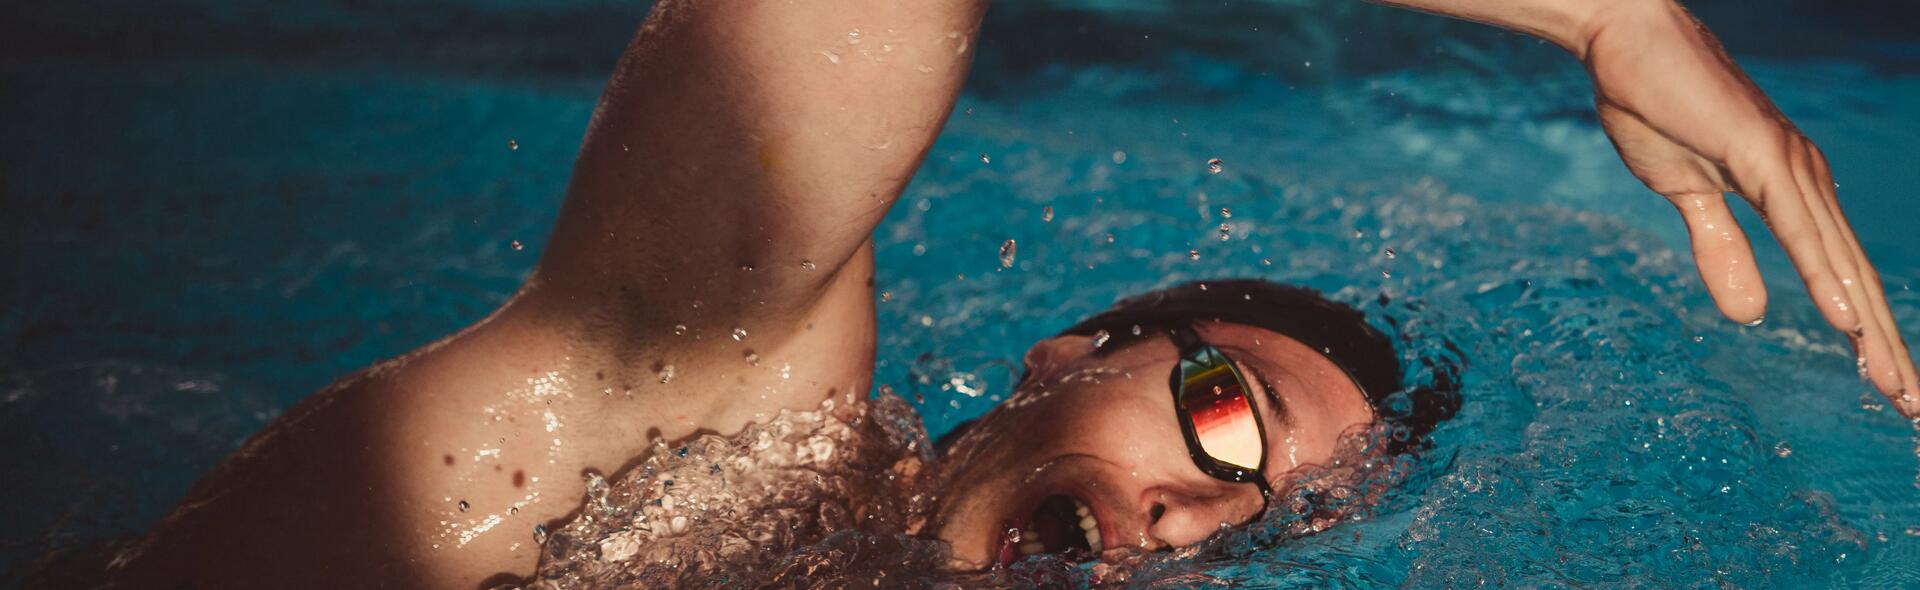 5 consejos que te harán feliz en natación